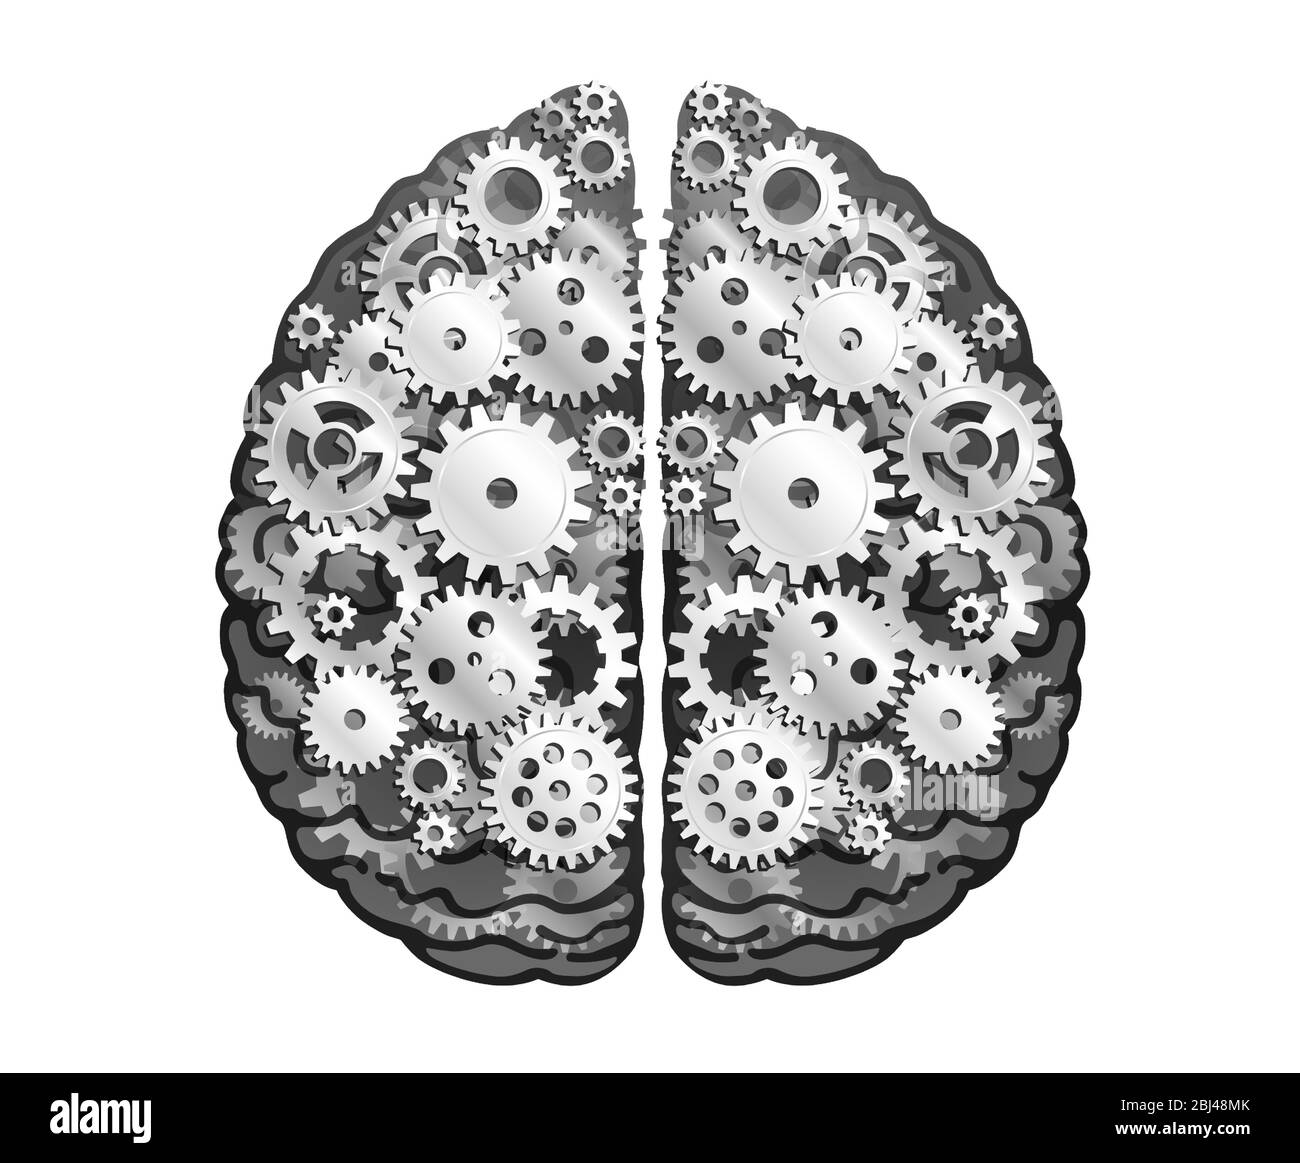 Cervello umano meccanico vettoriale. Ruote e ingranaggi in metallo argentato. Emisferi cerebrali, convoluzioni della mente cervello. Processo di pensiero e Findin Illustrazione Vettoriale